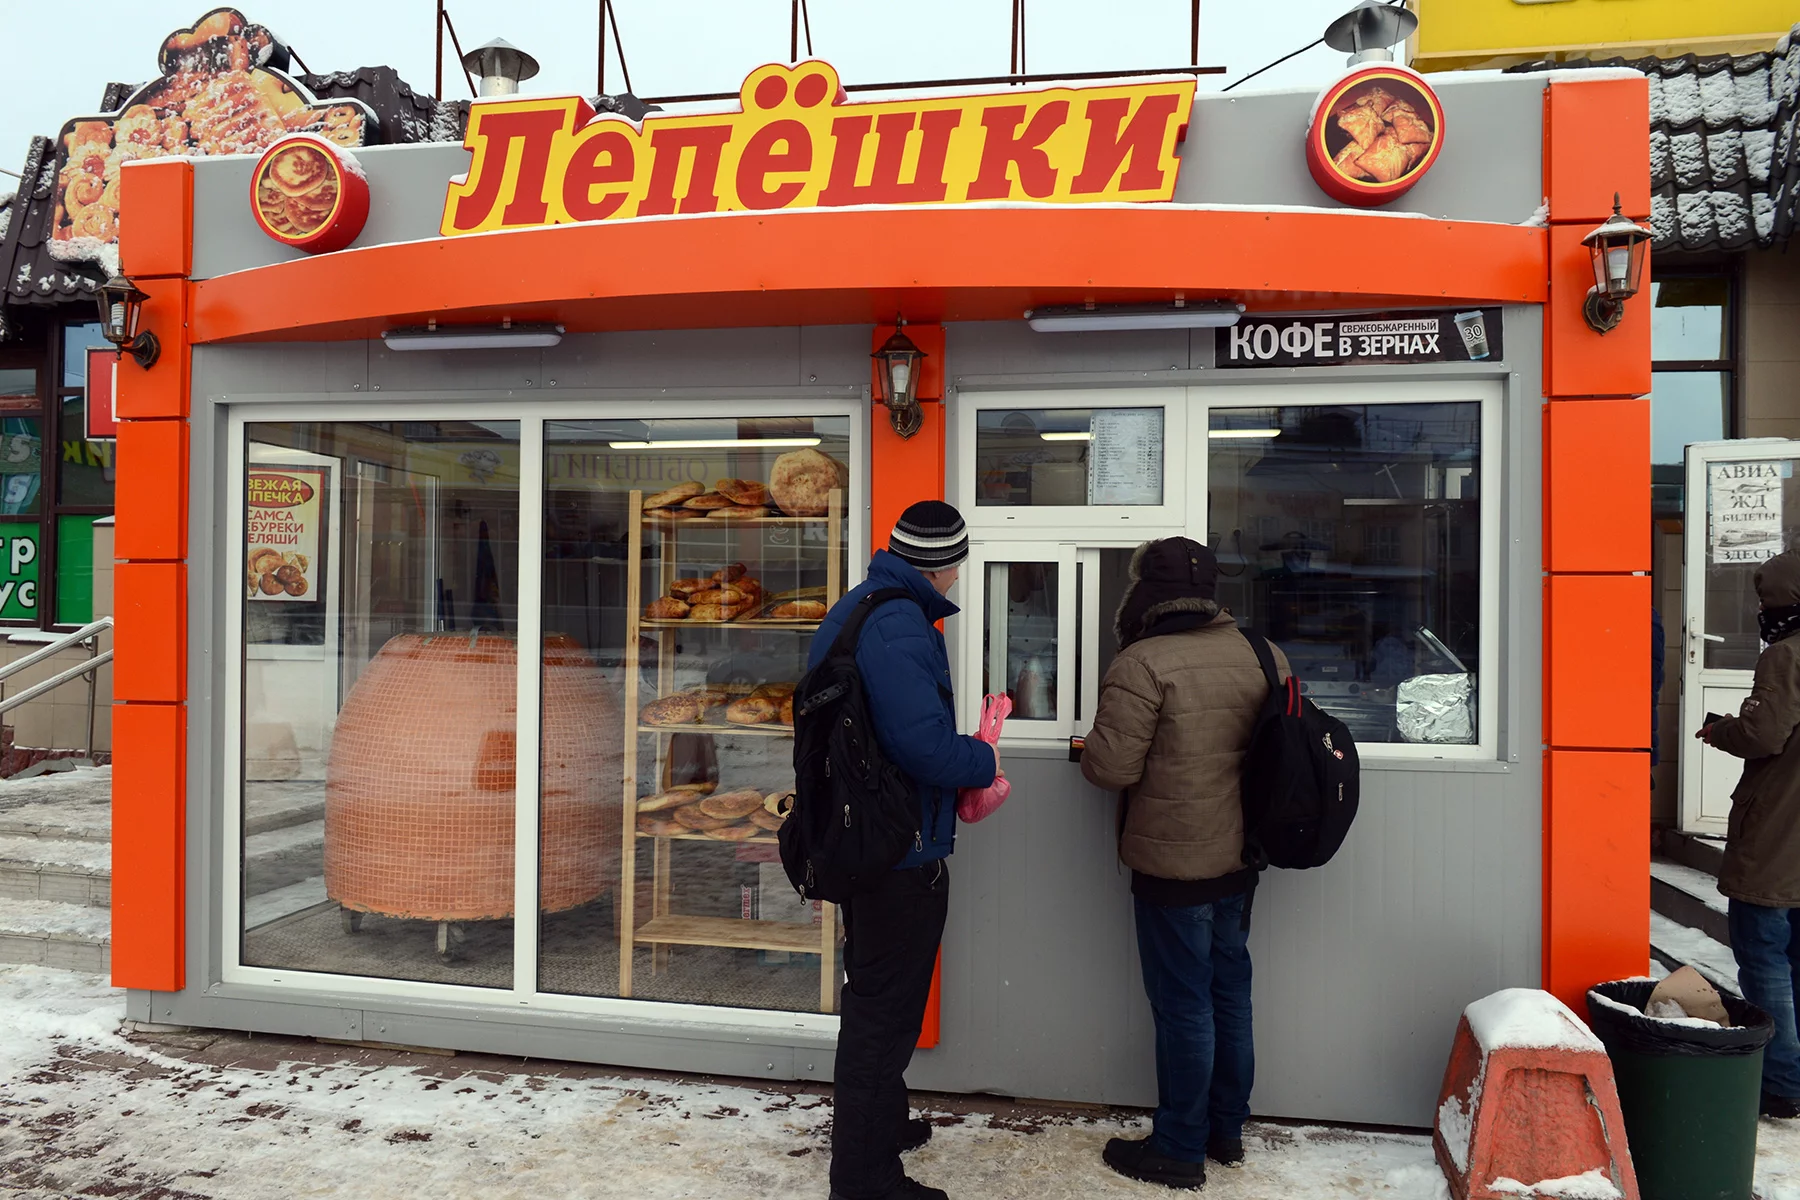 Kiosk selling Central Asian bread in Orekhovo Zuyevo